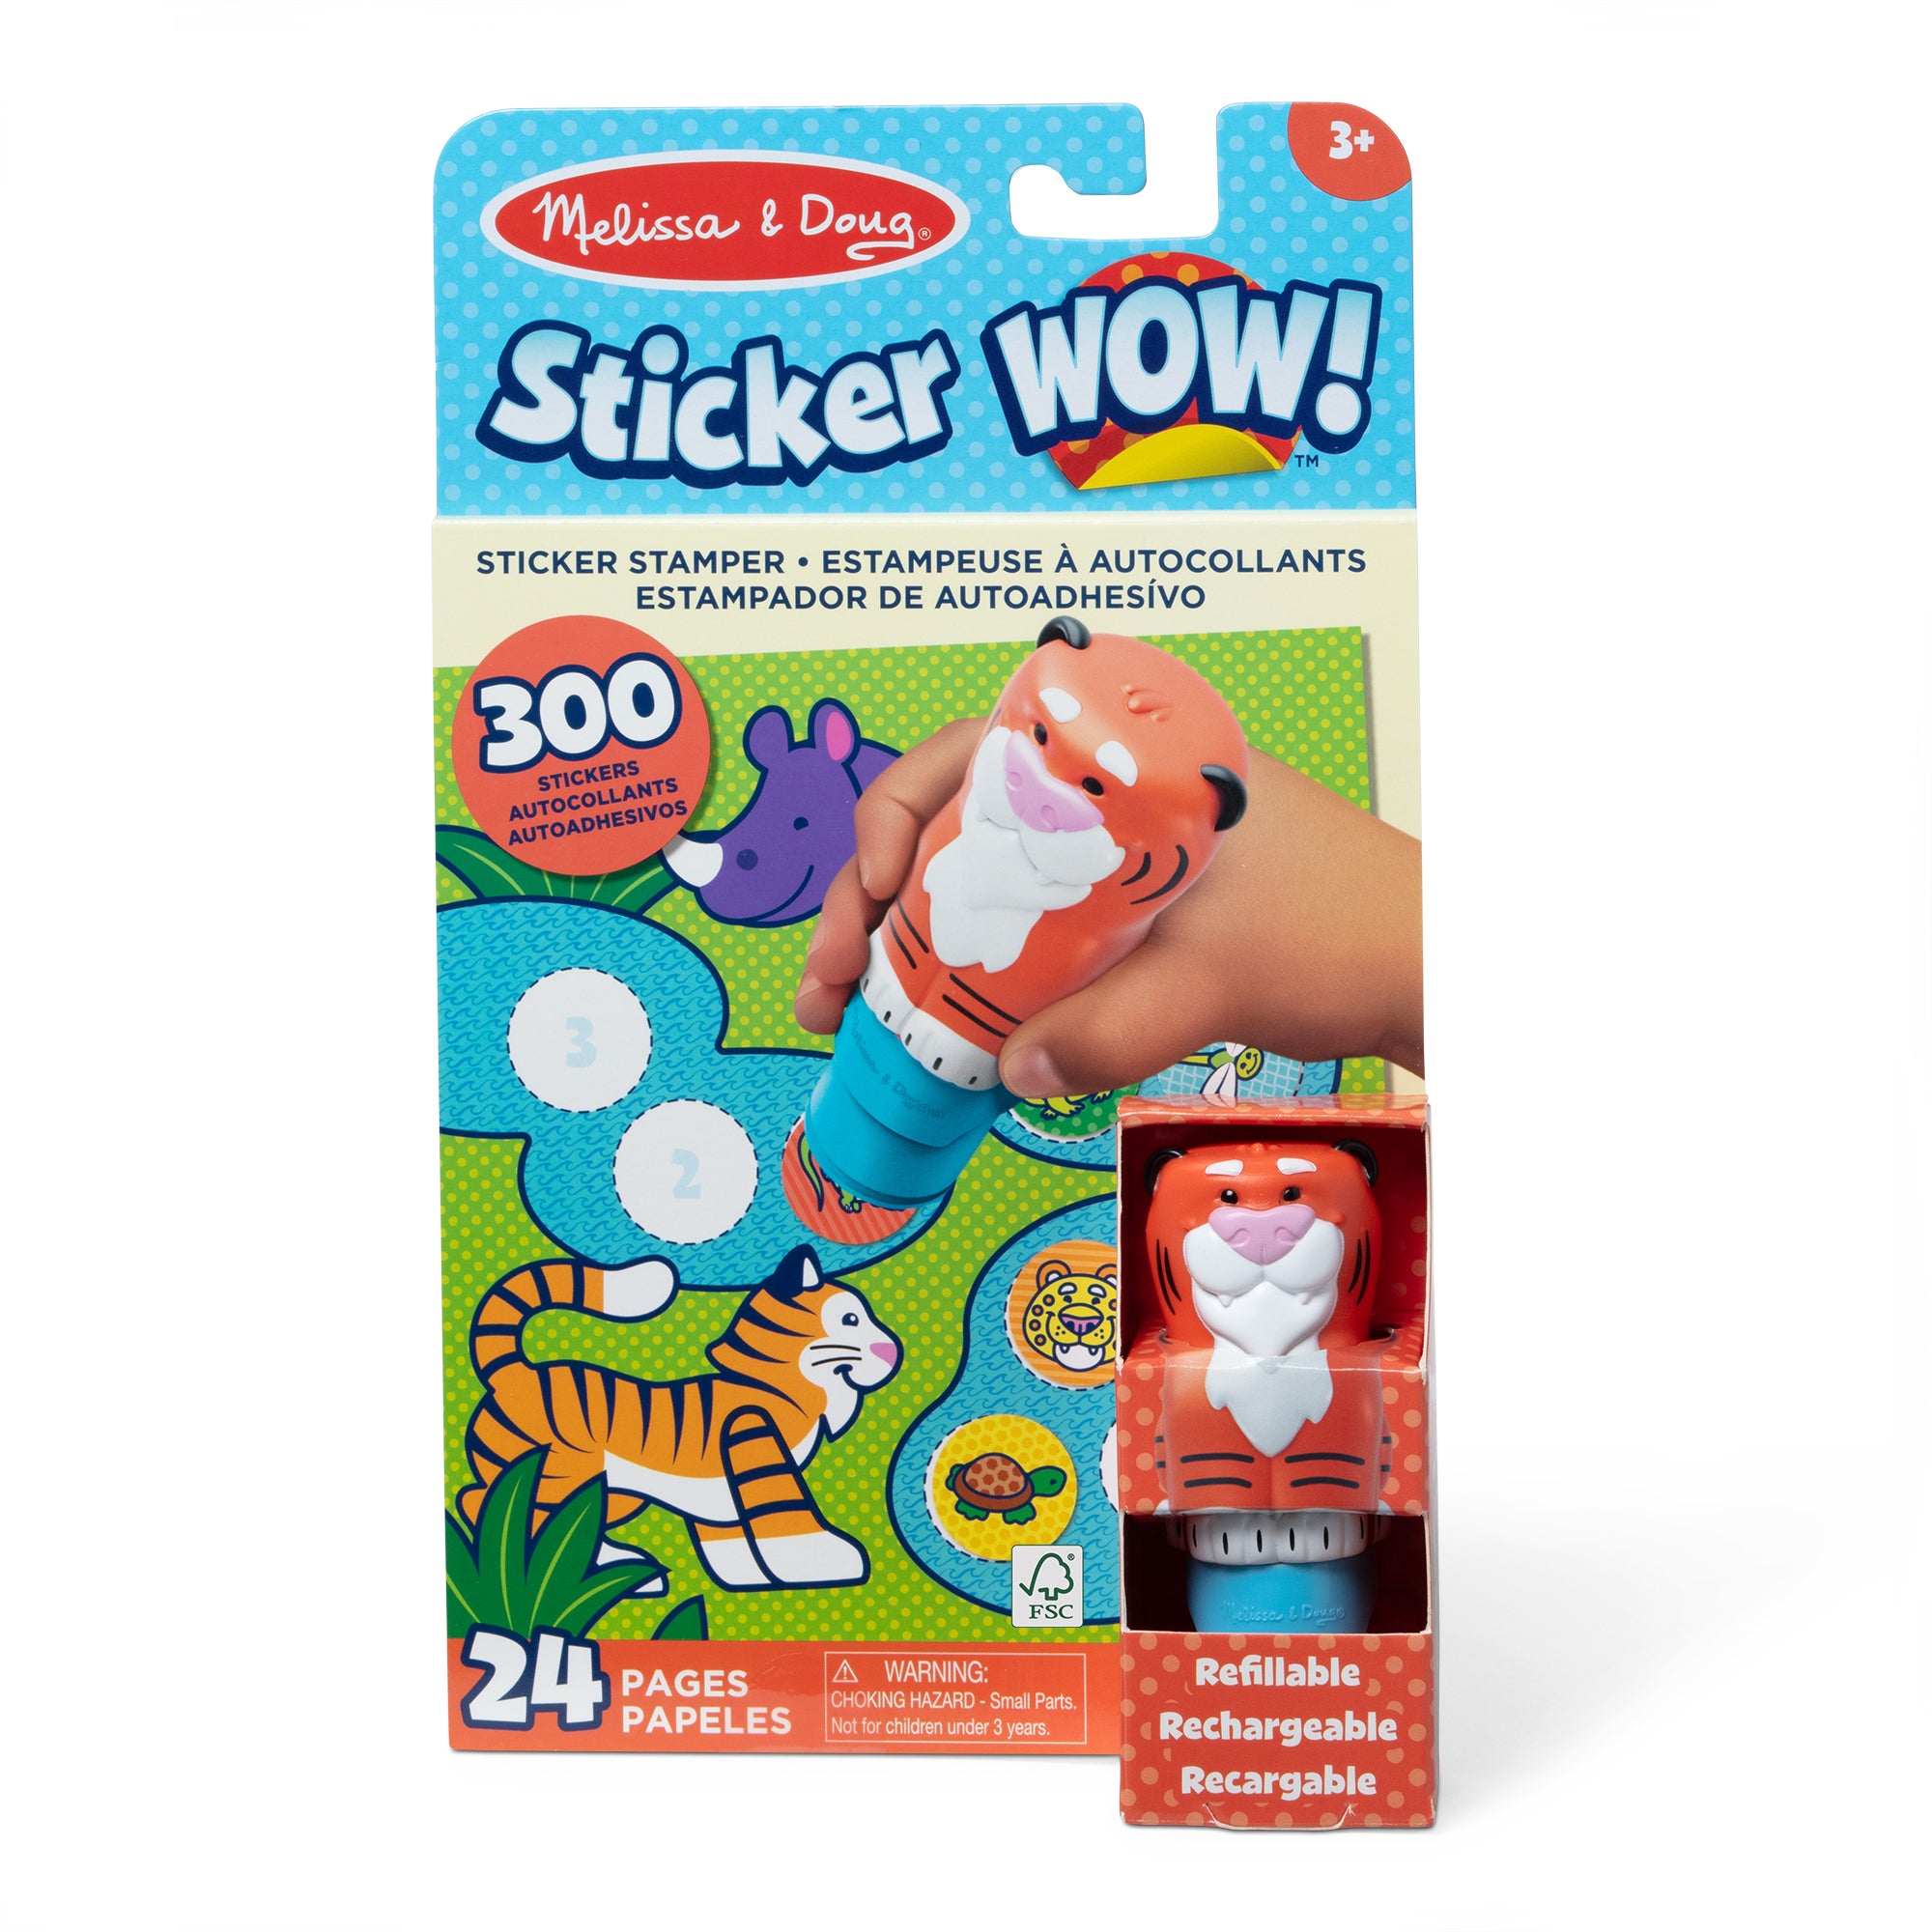 Sticker WOW! Activity Pad & Sticker Stamper - Tiger